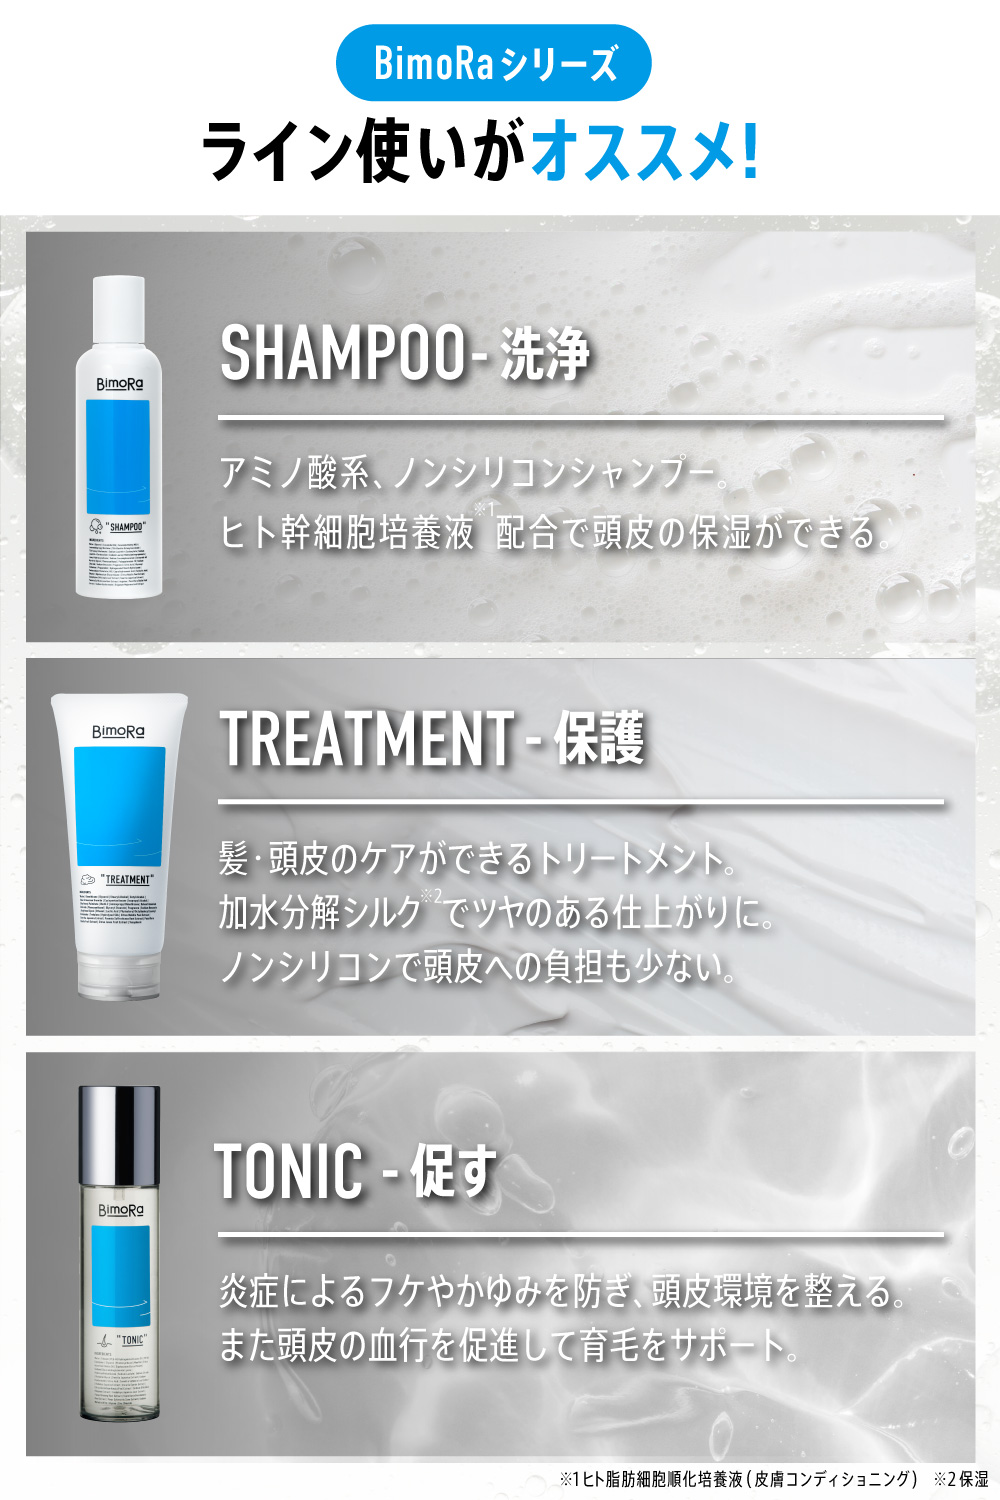 メンズシャンプー アミノ酸シャンプー ノンシリコン Made in Japan 通販